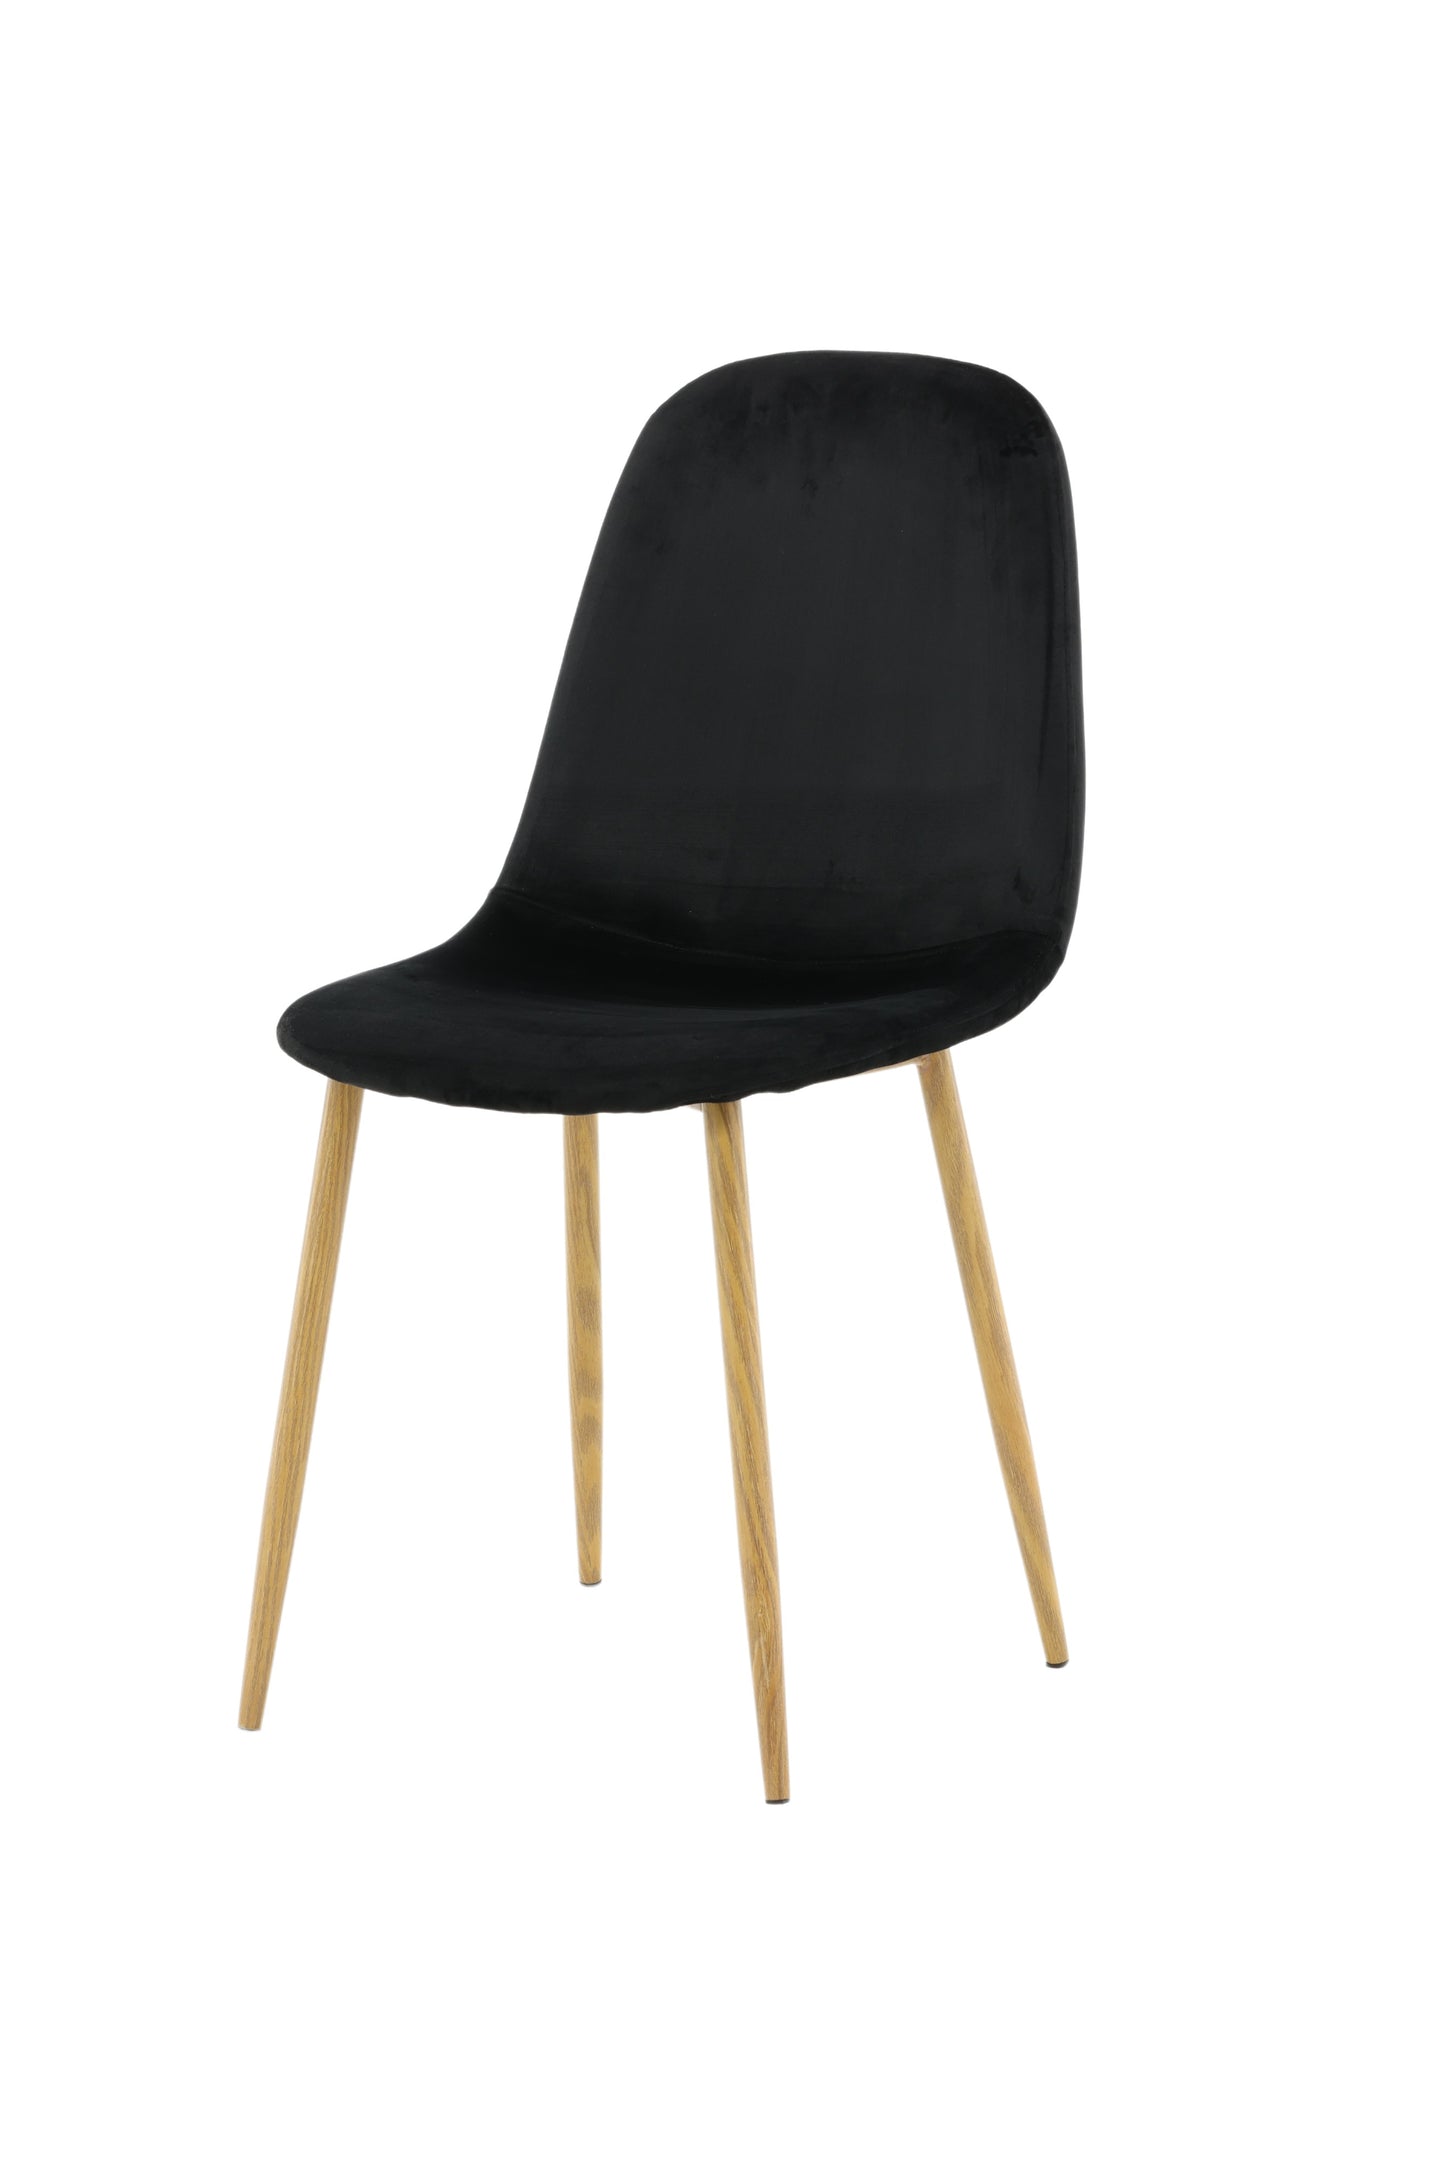 Polar - Spisebordsstol, Træfarvet ben / sort velour